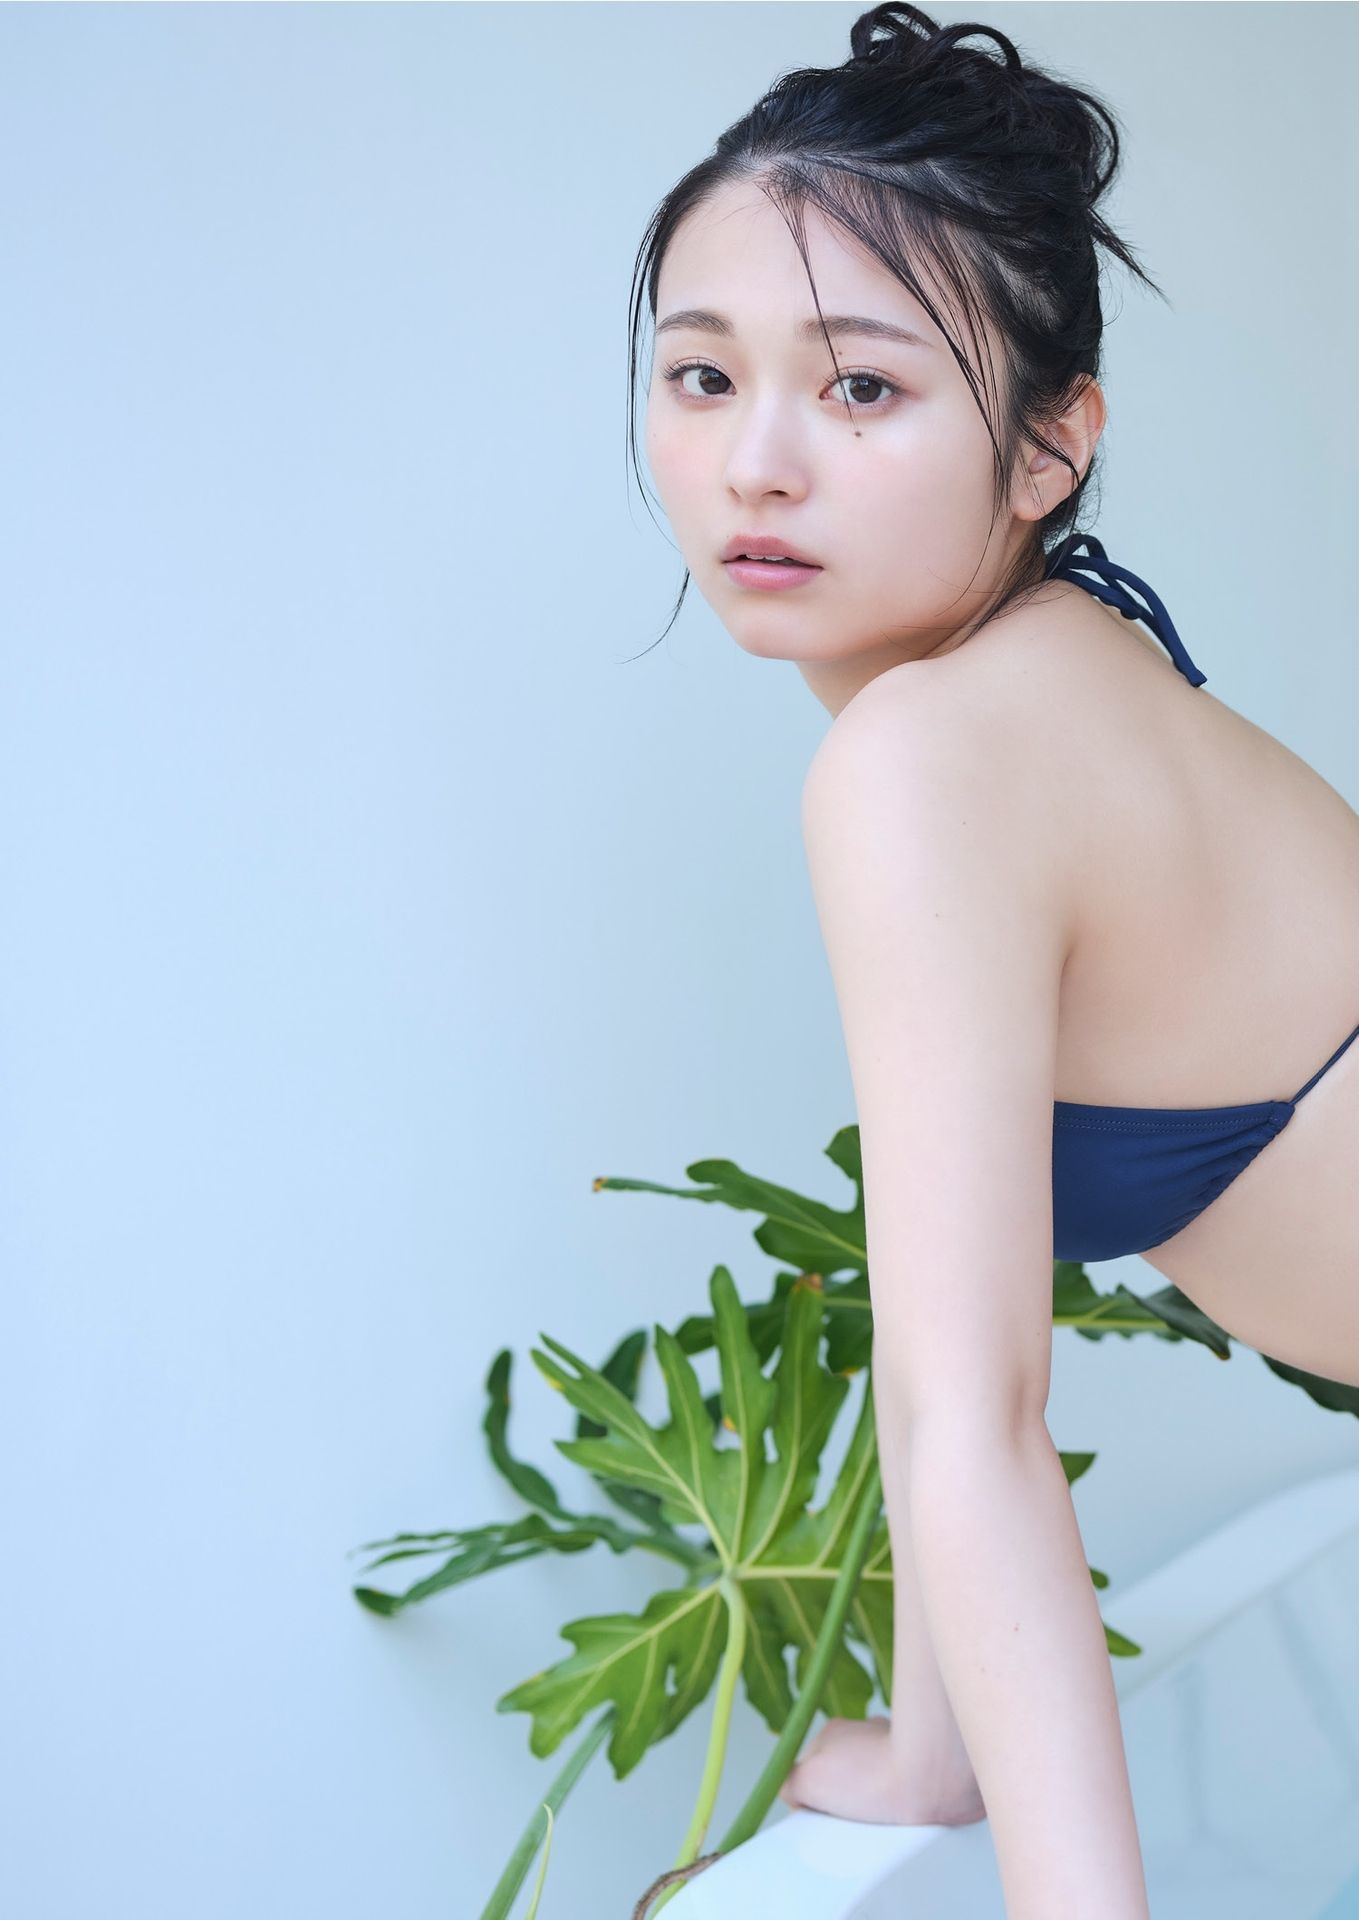 Mizuki Kirihara 桐原美月, デジタル限定 YJ Photo Book 「少女と大人と」 Set.01